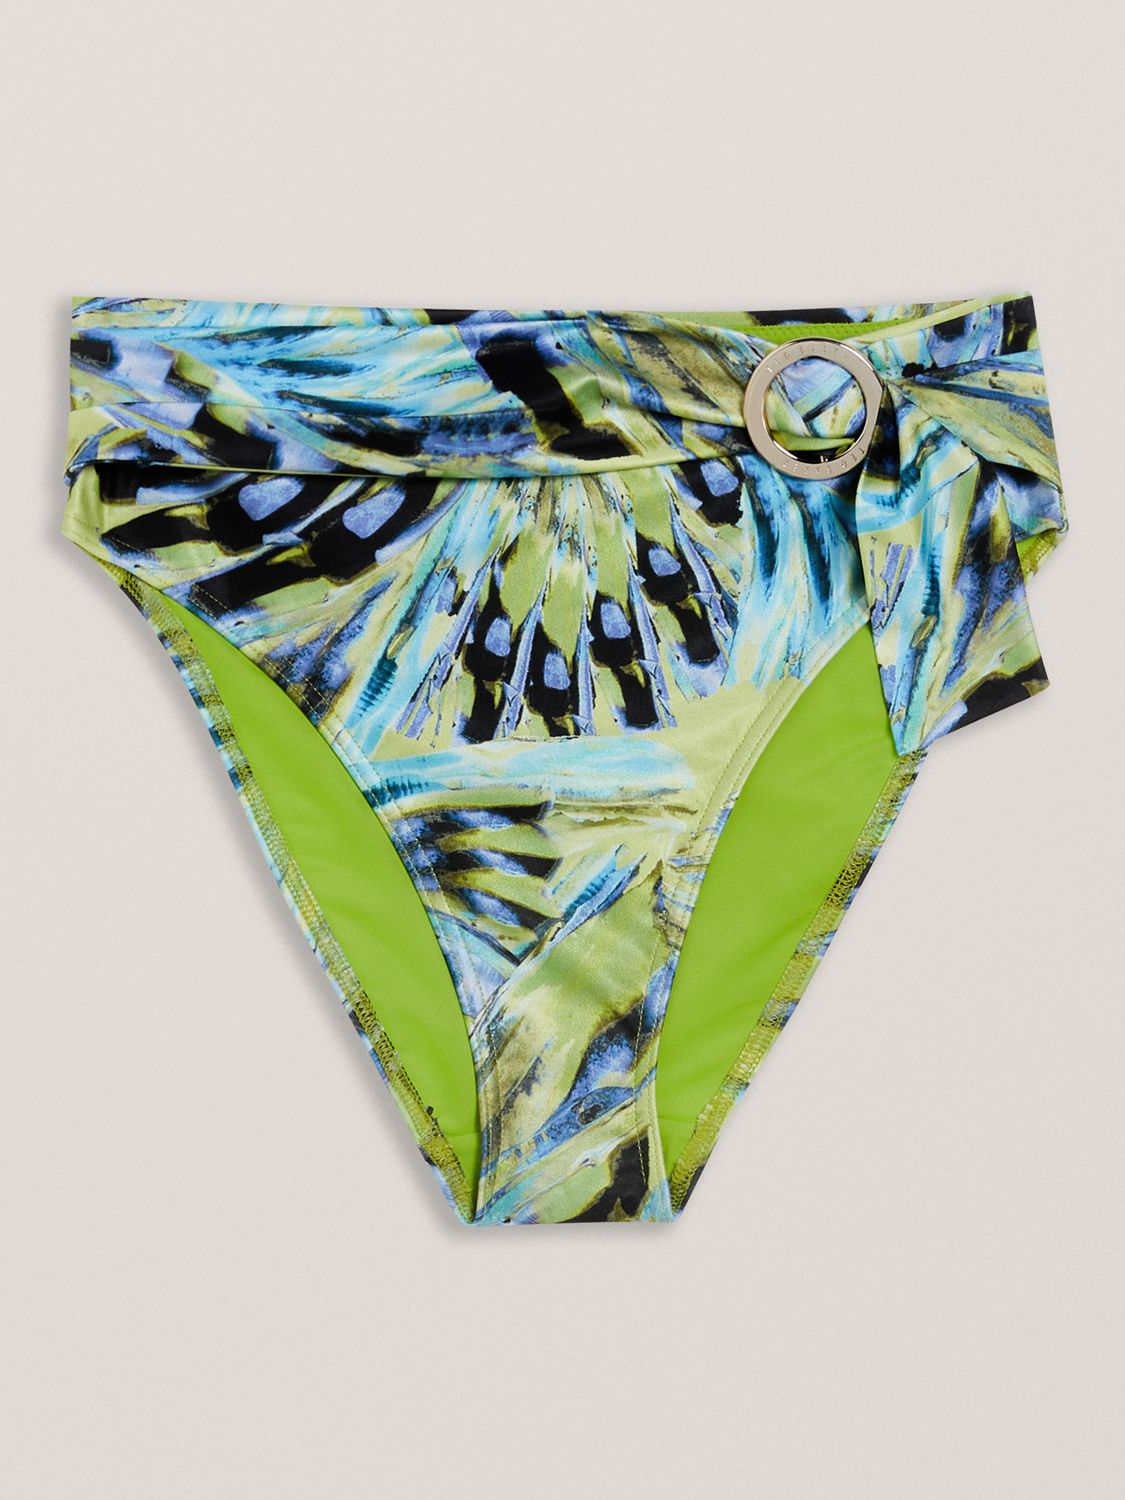 Ted Baker Chayrl Abstract print High Waisted Bikini Bottoms, Lime/Multi, 8